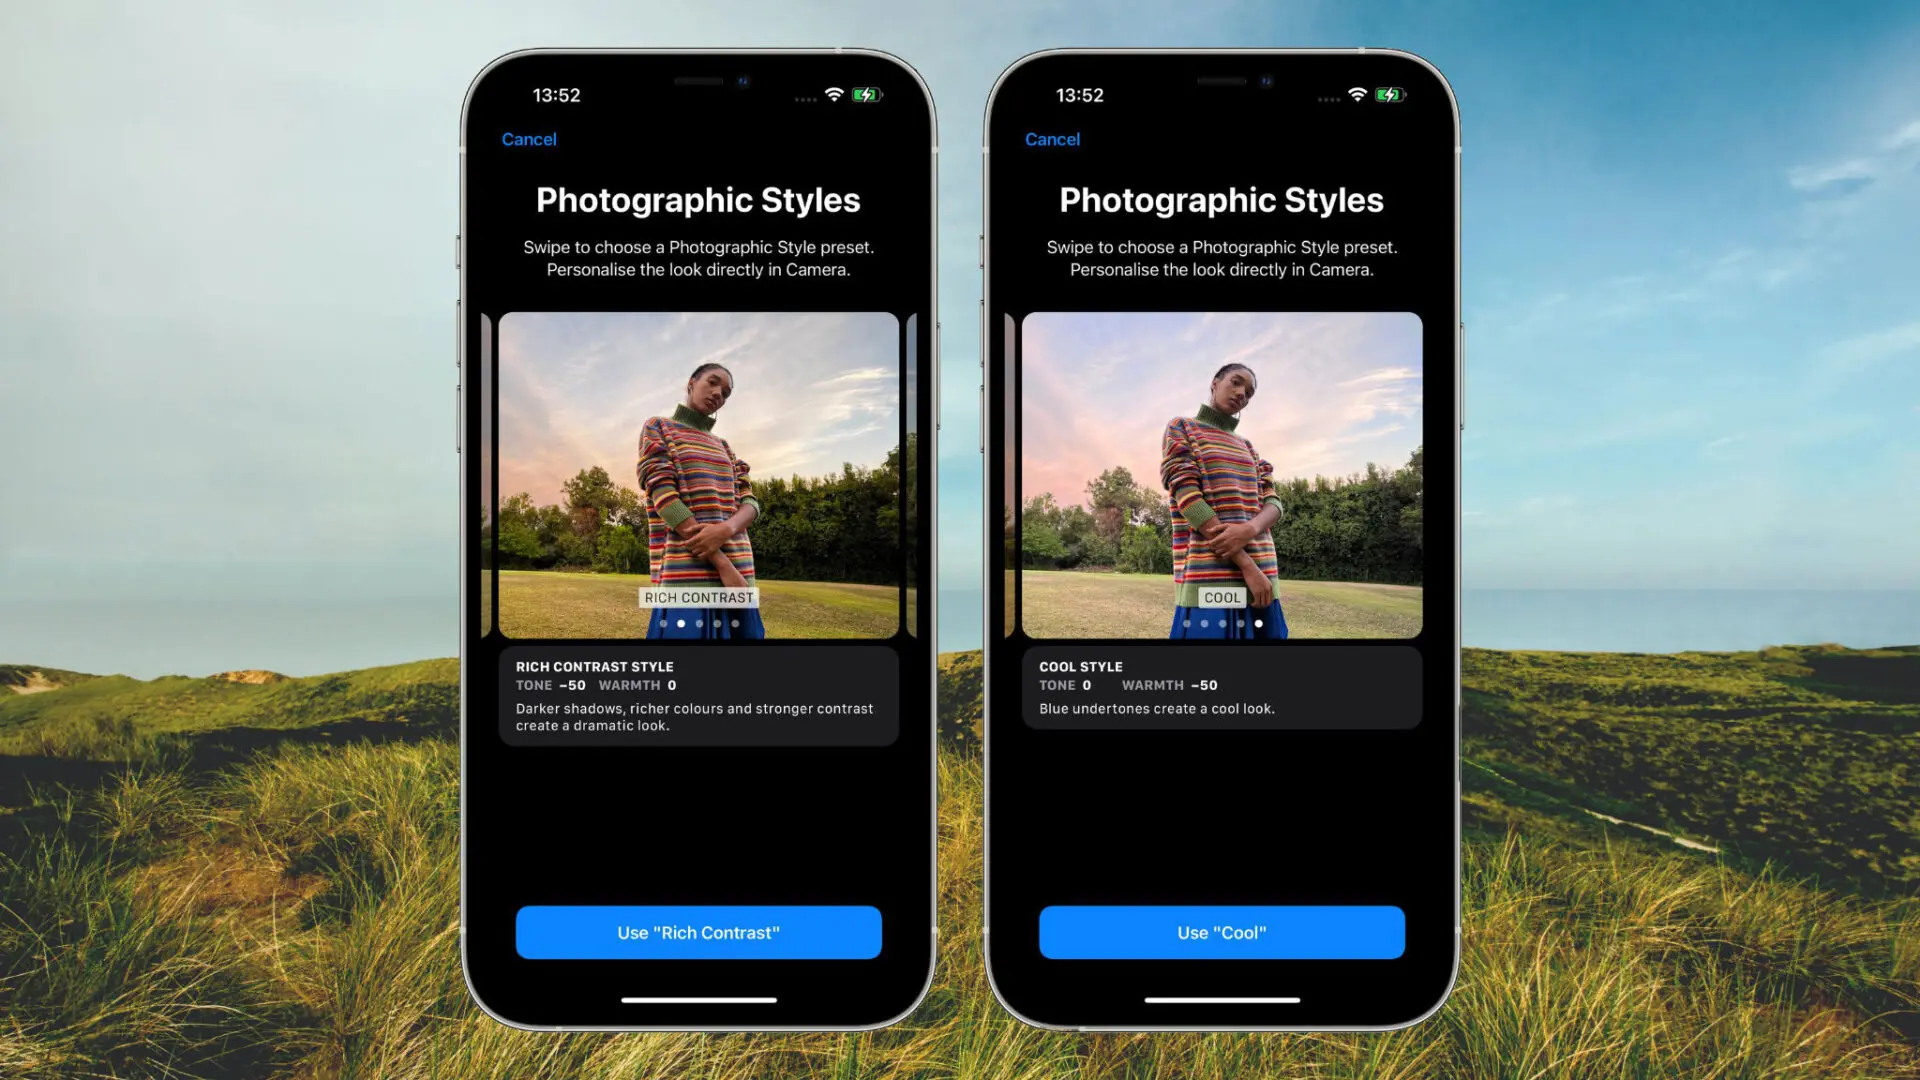 Hướng dẫn chụp ảnh Photographic Styles trên iPhone 13